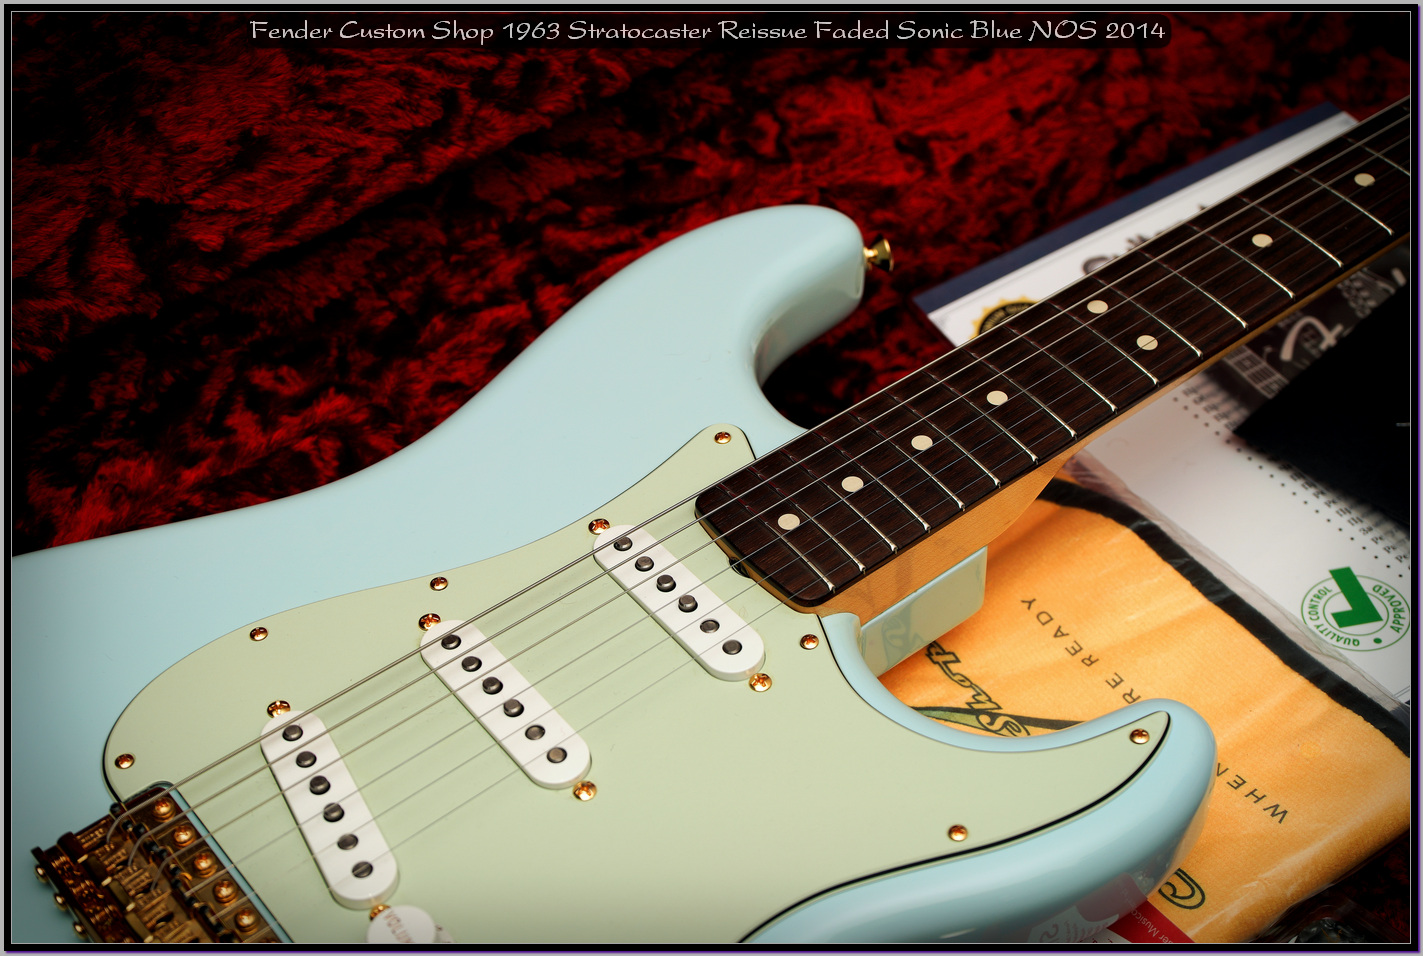 Fender Custom Shop 1963 Stratocaster Reissue Faded Sonic Blue NOS 2014 25_x1400.jpg